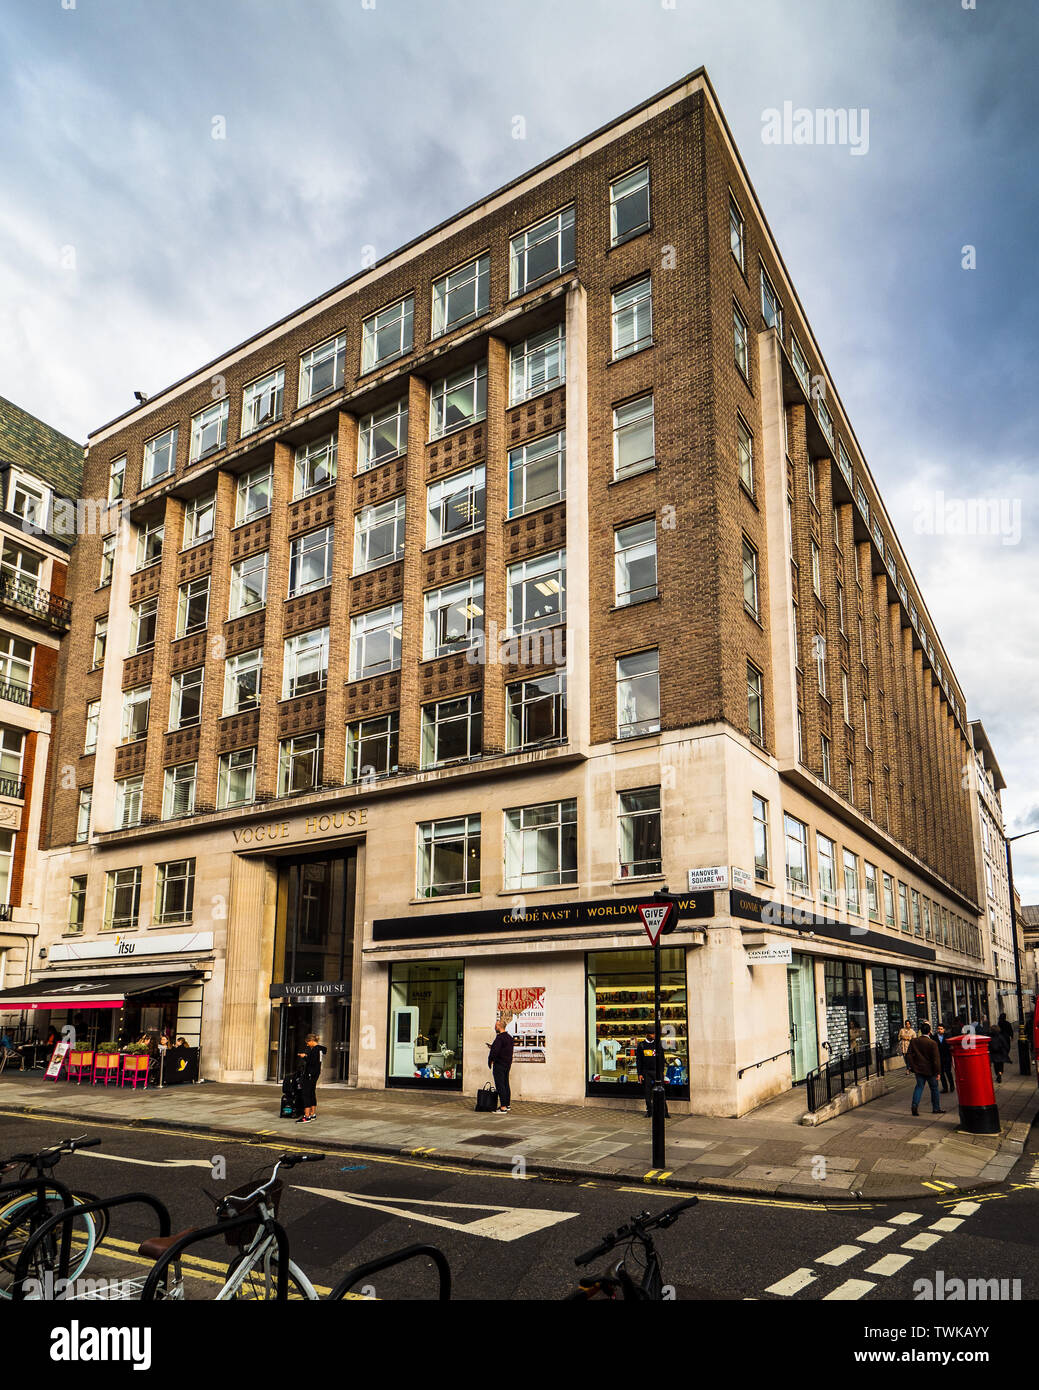 Grande-bretagne - Siège de Condé Nast Vogue House, 1-2 Hanover Square, Mayfair, Londres. Achitects Yates, Cook & Darbyshire, achevée 1958 Banque D'Images